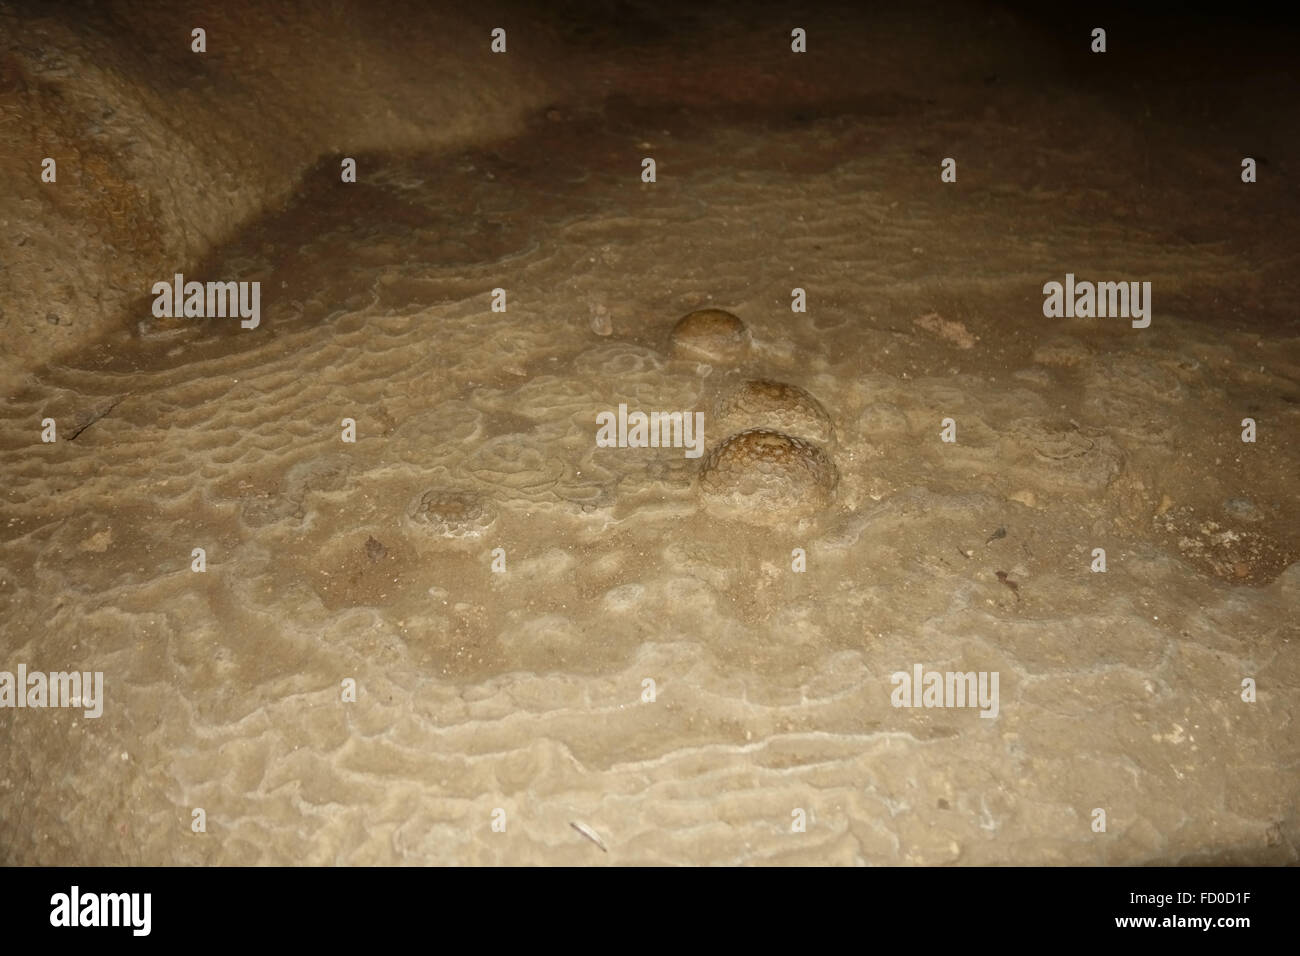 Les œufs de tortue fossilisée dans la roche calcaire de la grotte Dau Go dans la baie d'Halong, Vietnam Banque D'Images